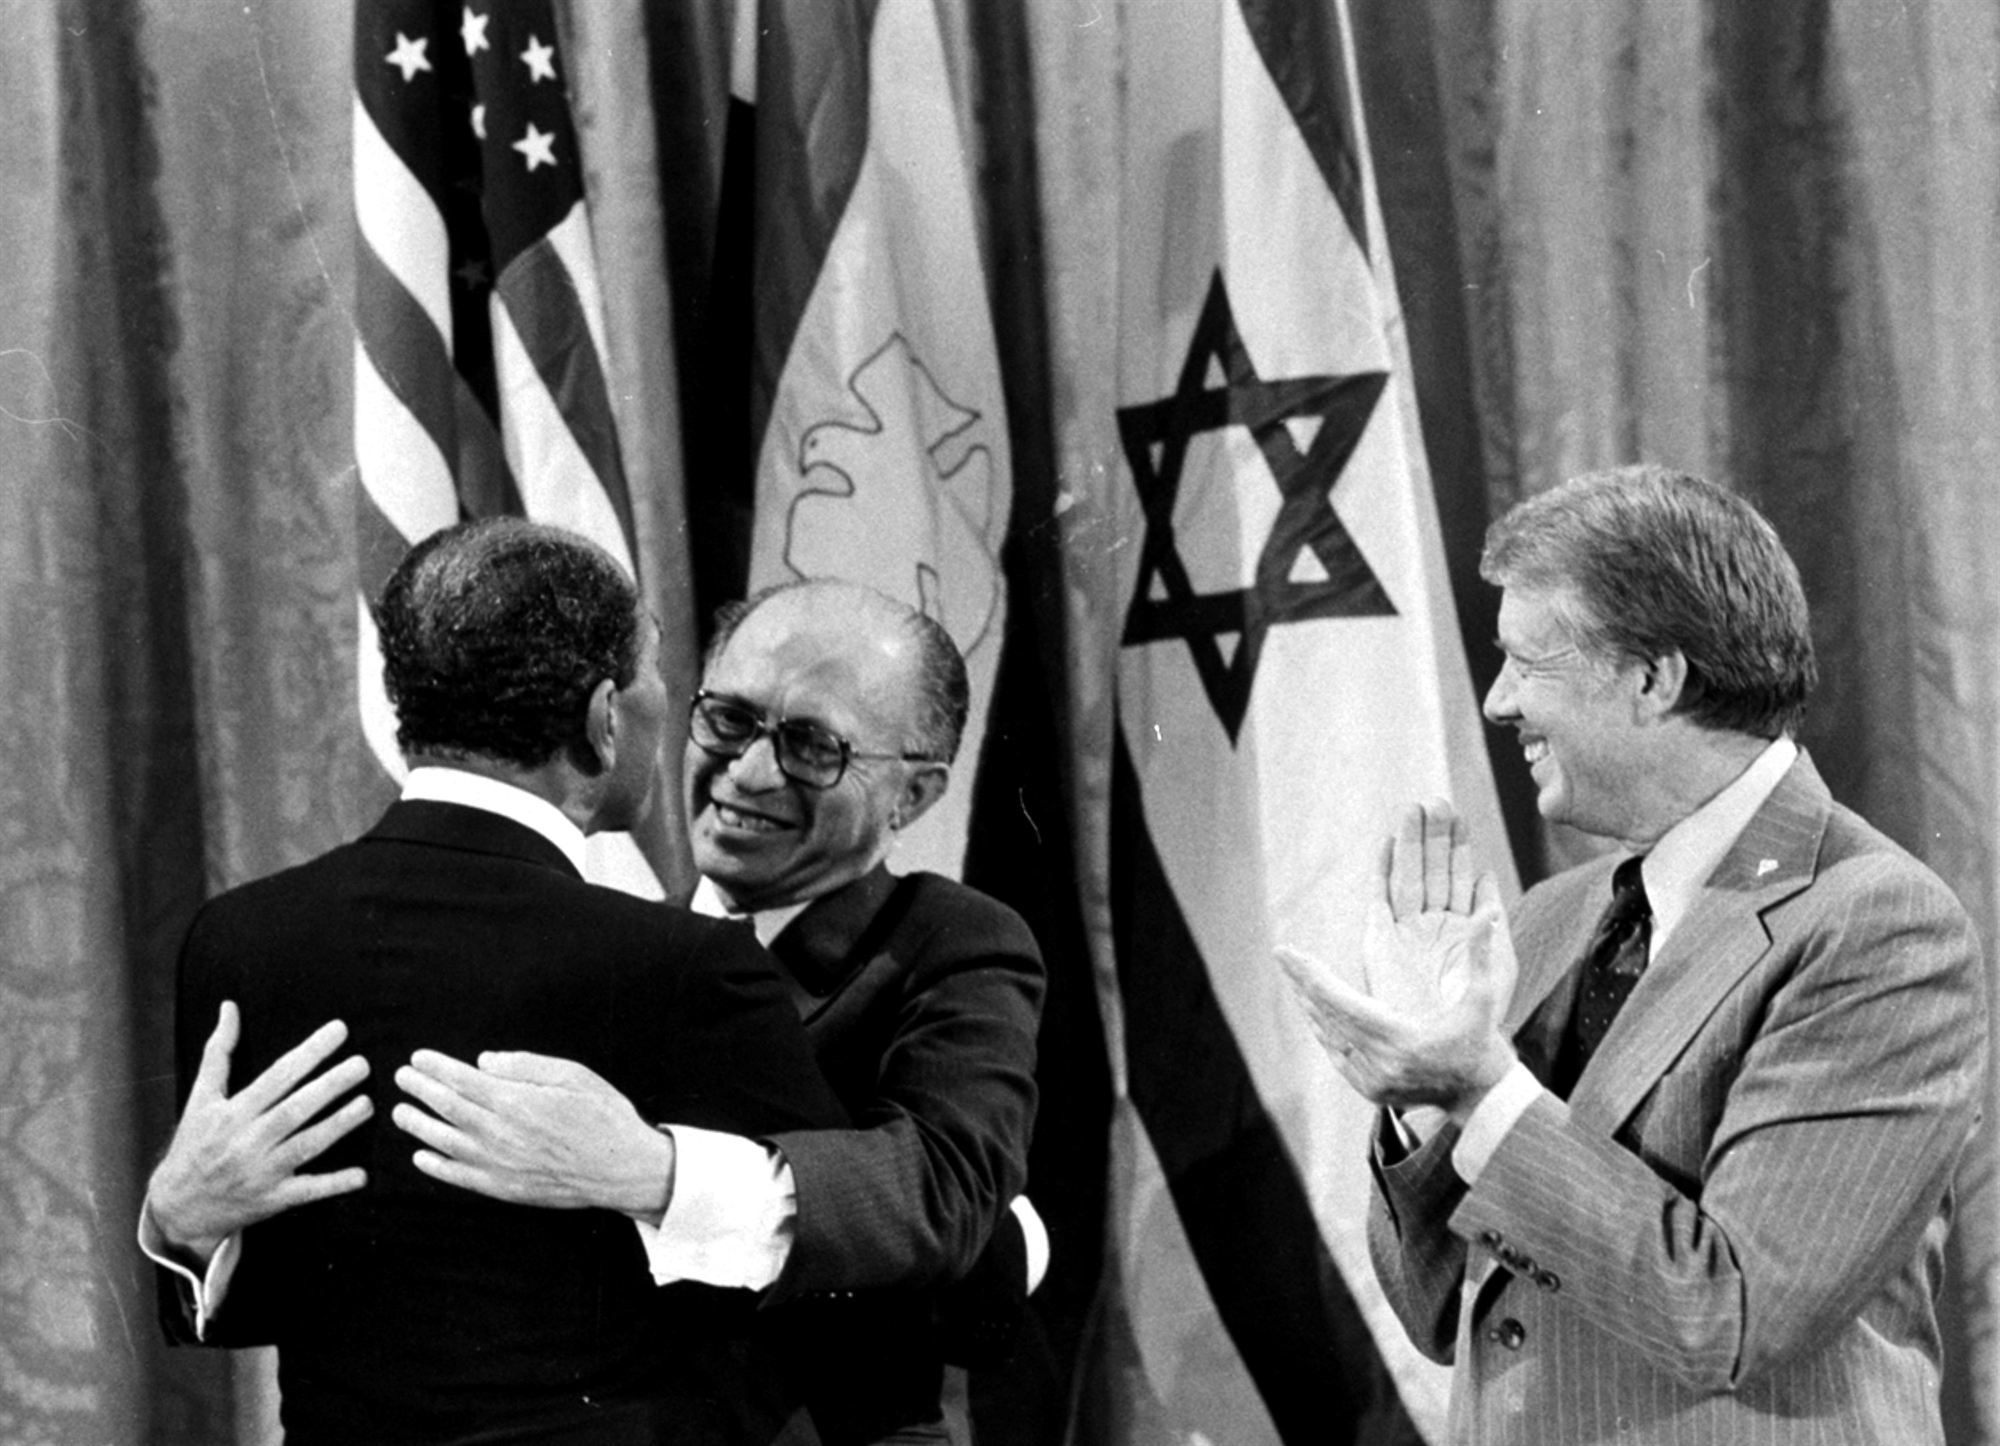 Τι είναι οι συμφωνίες του Καμπ Ντέιβιντ που υπογράφηκαν το 1979 μεταξύ Αιγύπτου-Ισραήλ